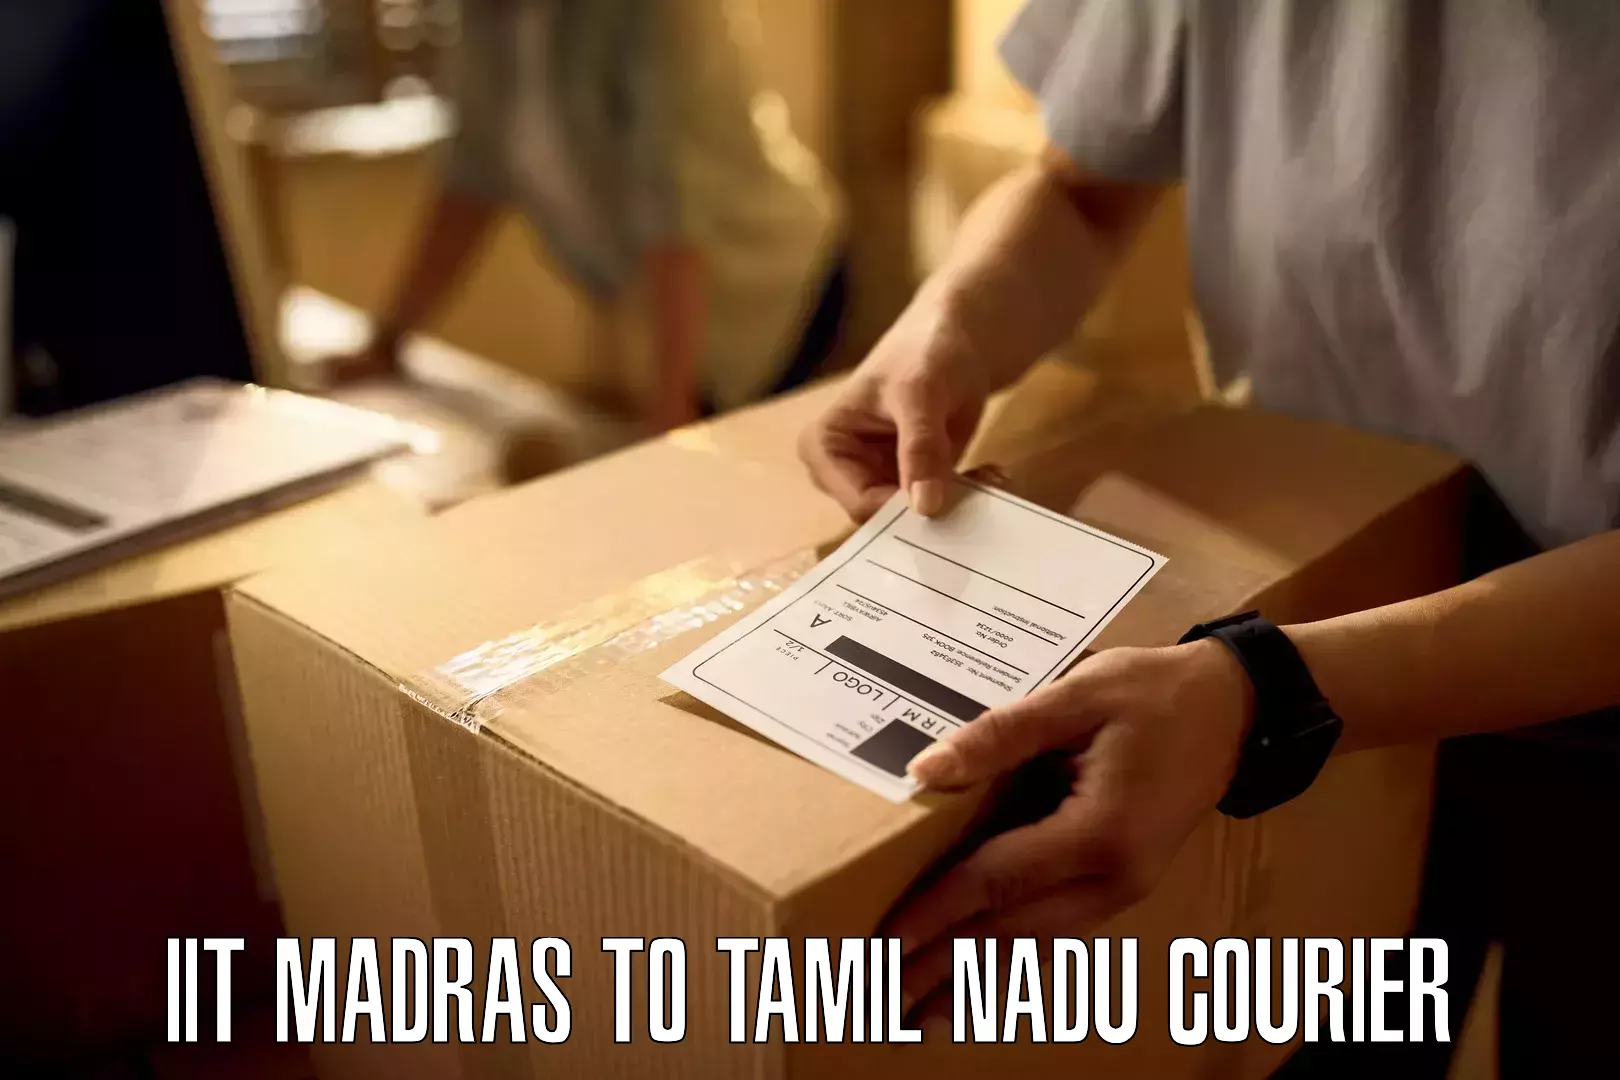 Multi-modal transportation in IIT Madras to Tamil Nadu